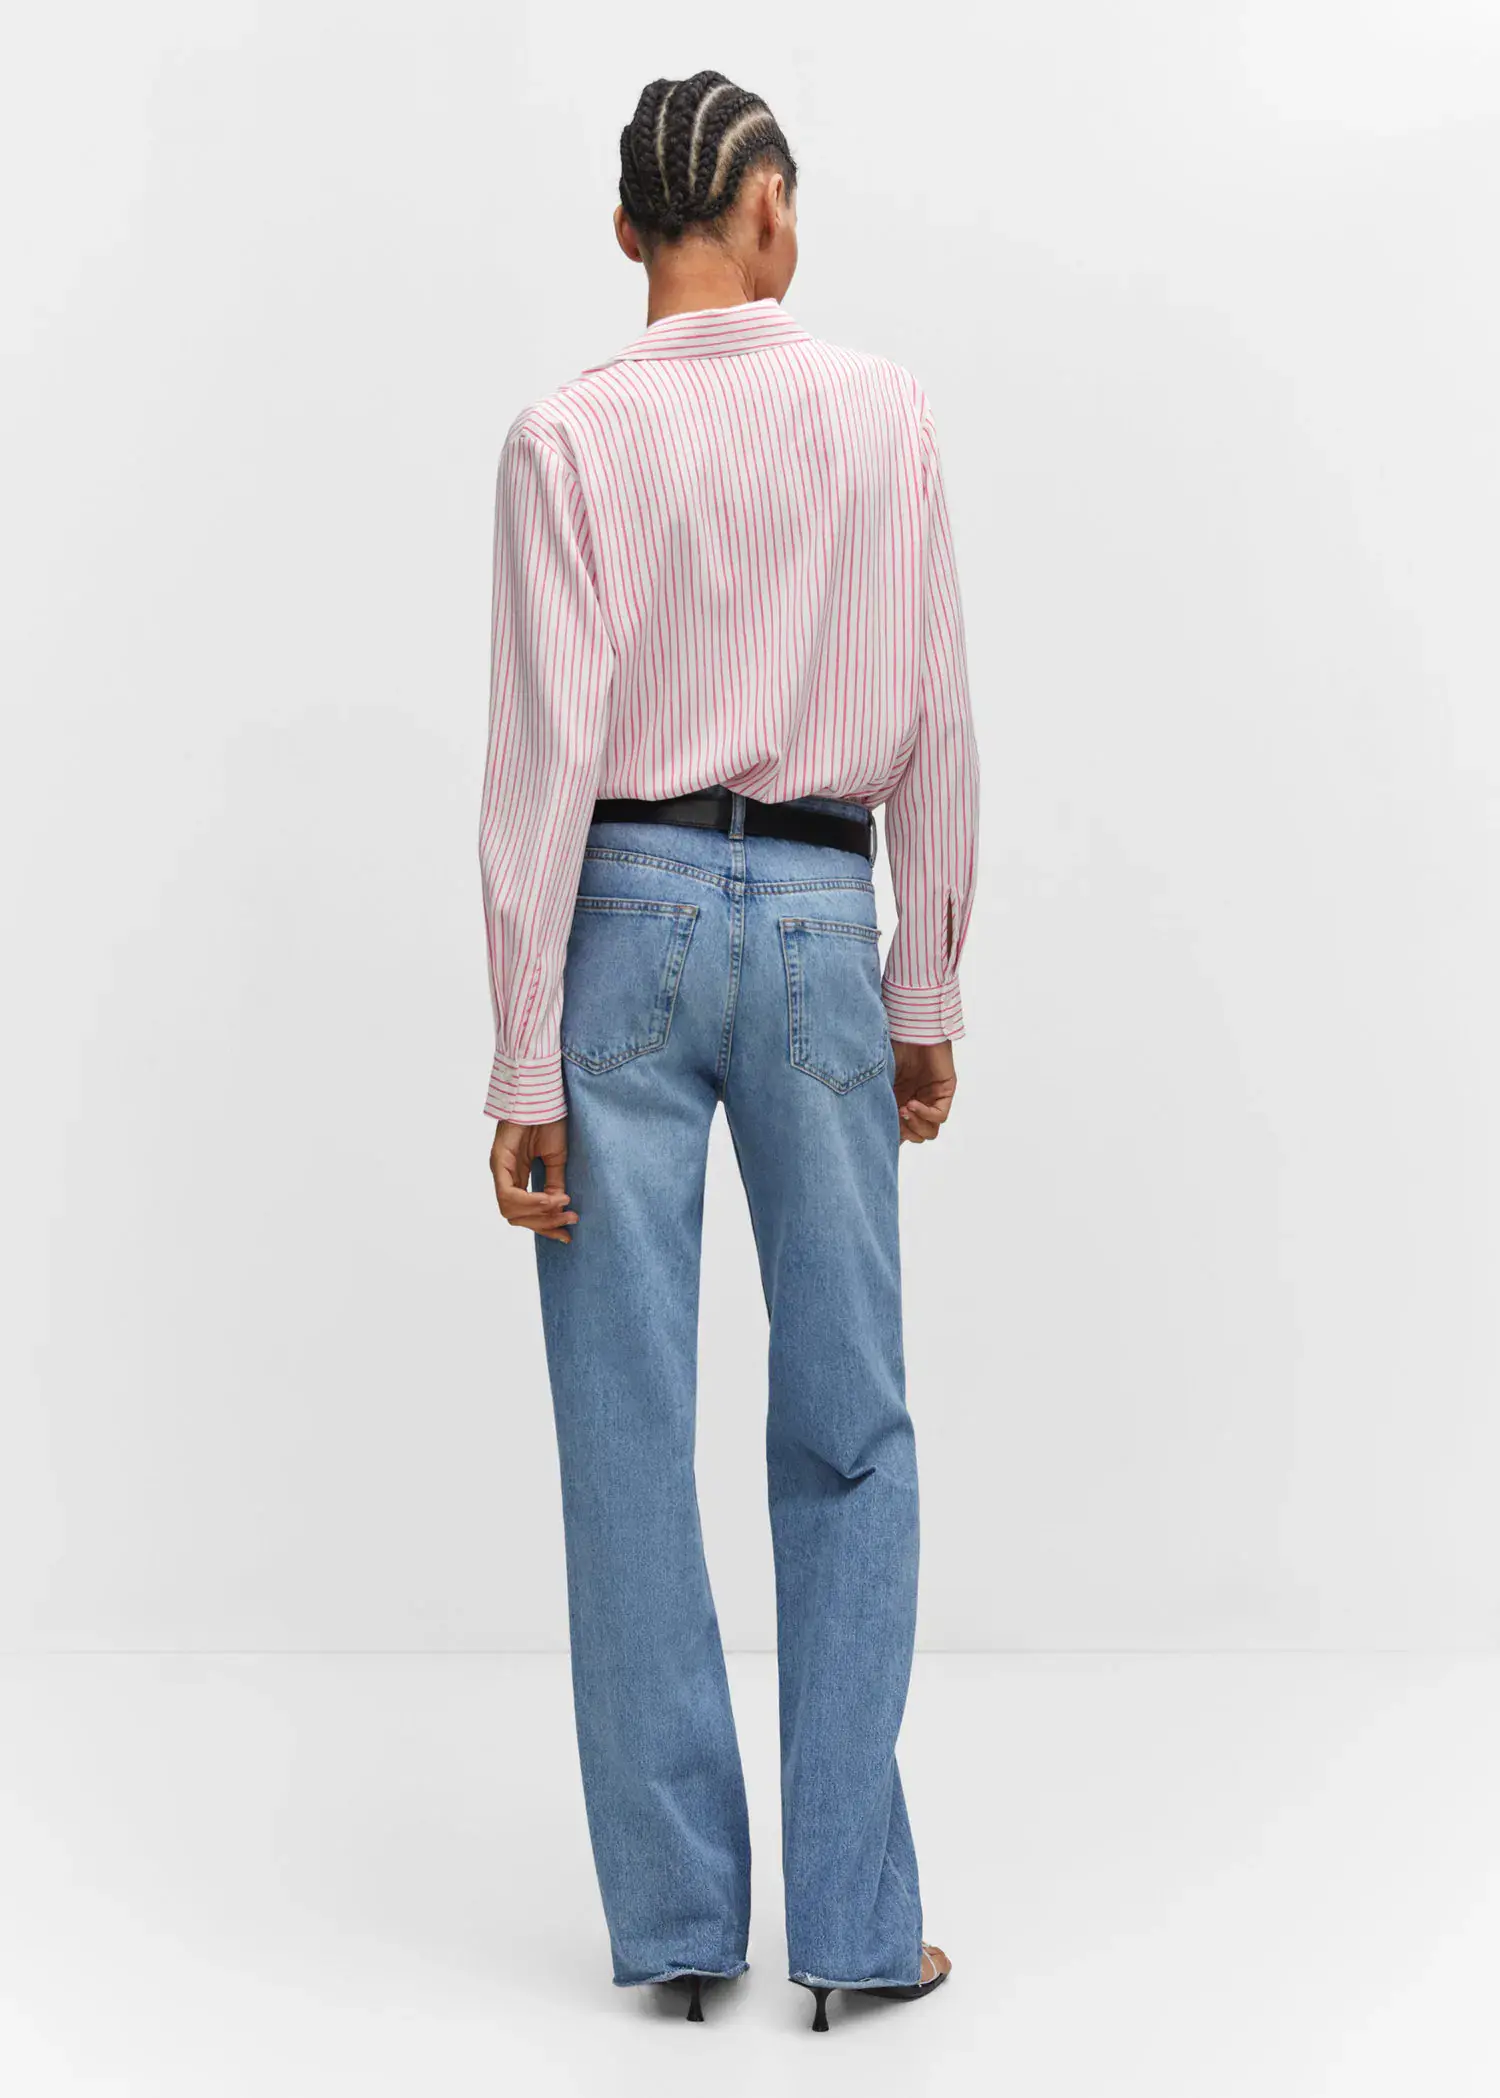 Mango Regular flowy shirt. a man in a pink shirt and blue jeans. 